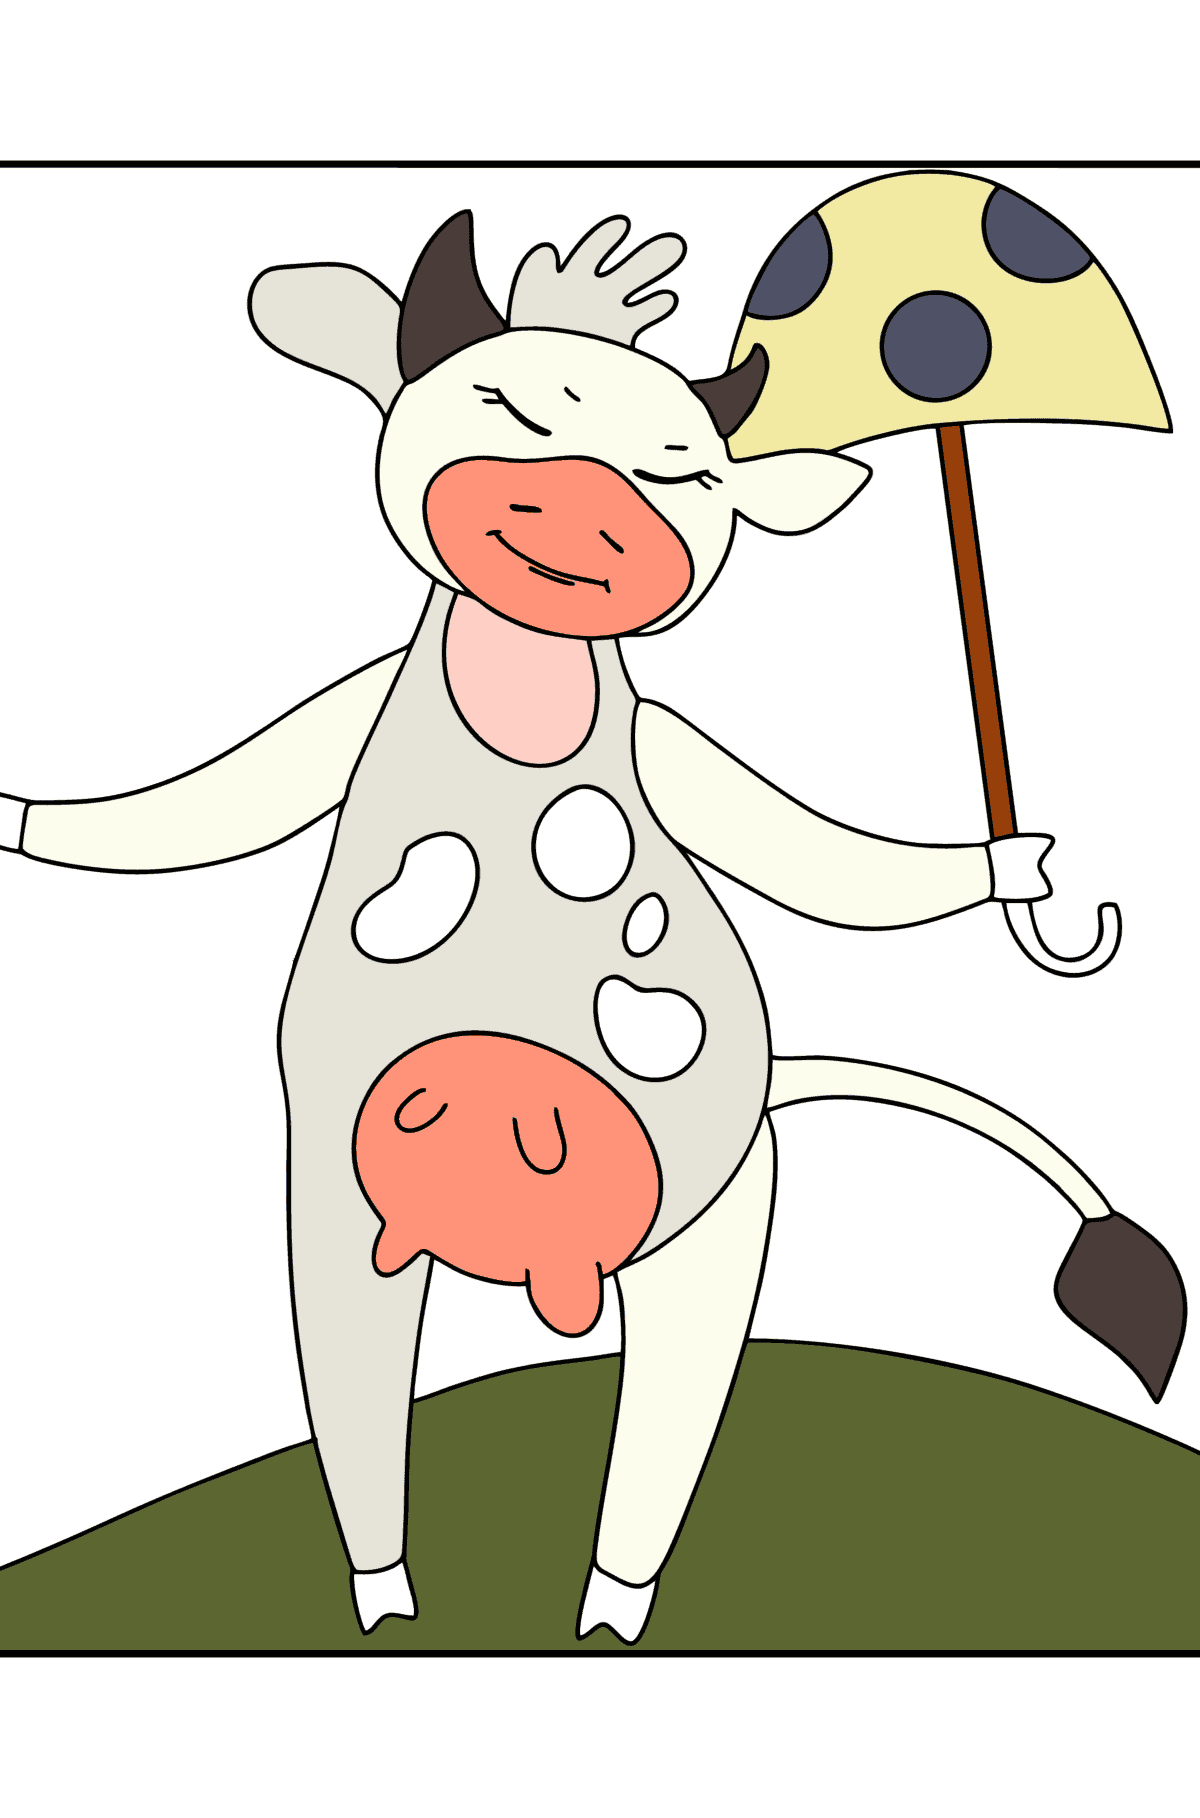 Disegno da colorare di mucca Lola - Disegni da colorare per bambini